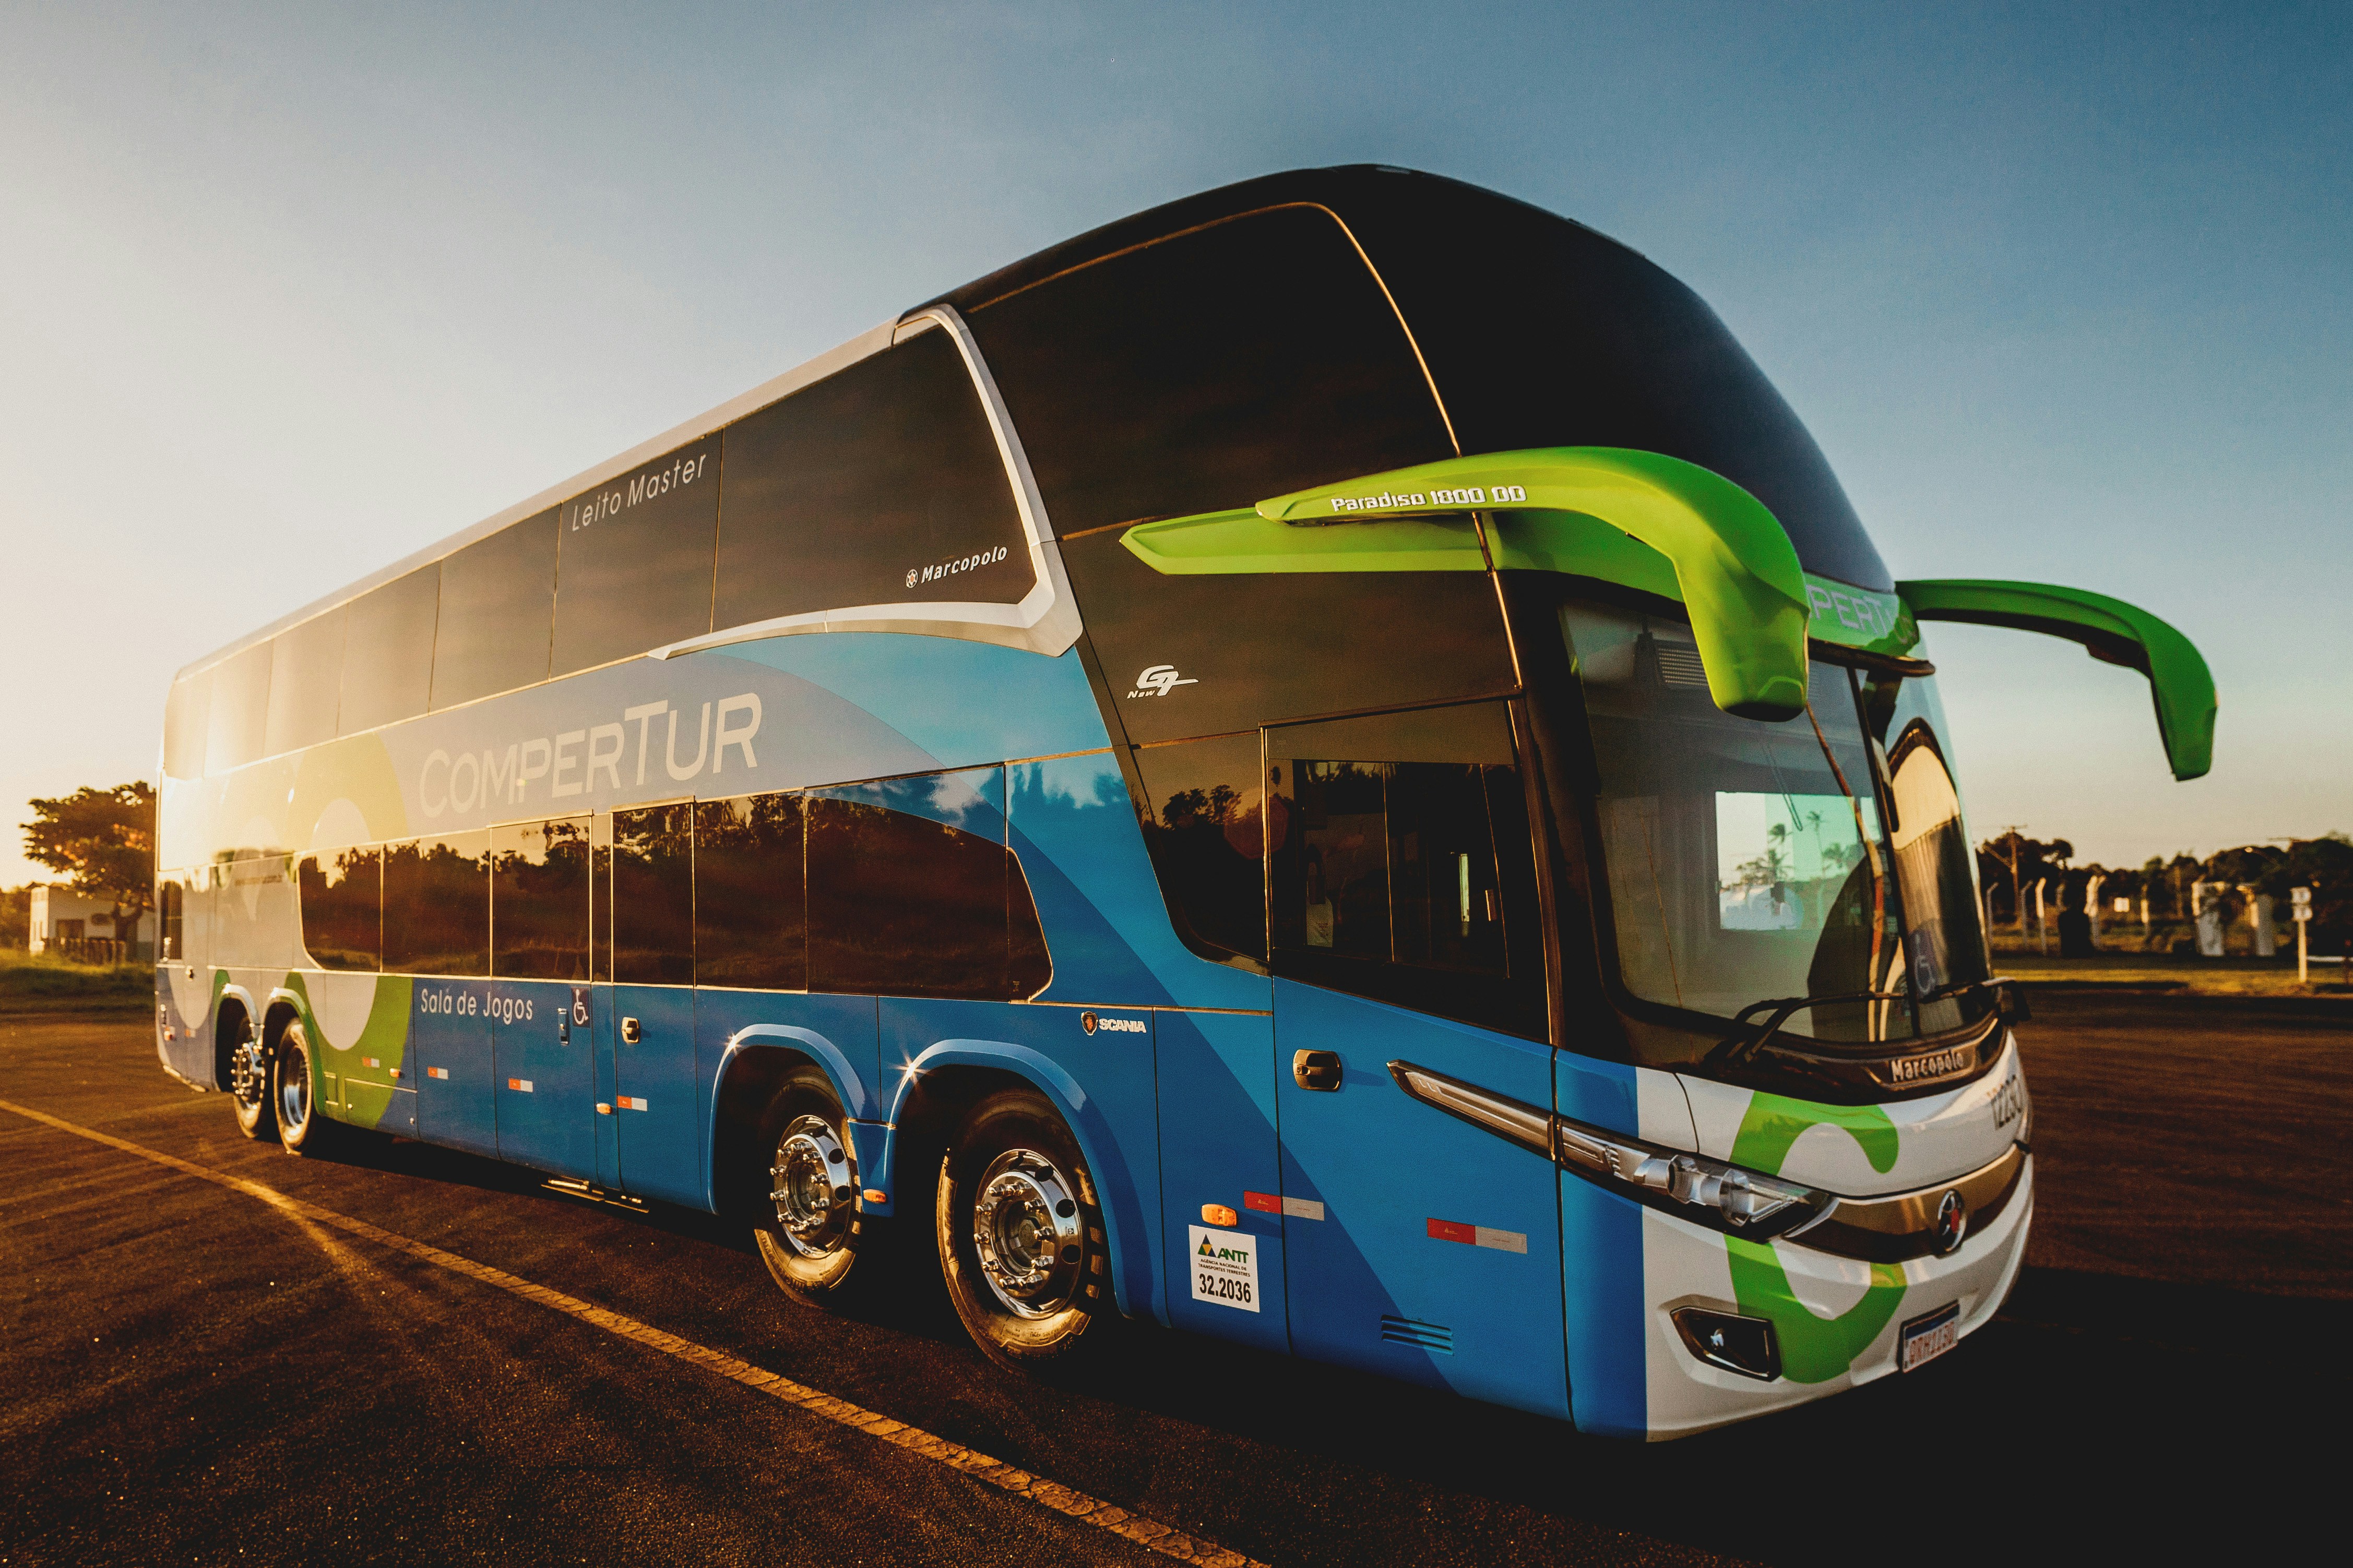 Портал для пасажирів, єЧерга і нові правила перевезень: в Україні запустили реформу автобусних перевезень